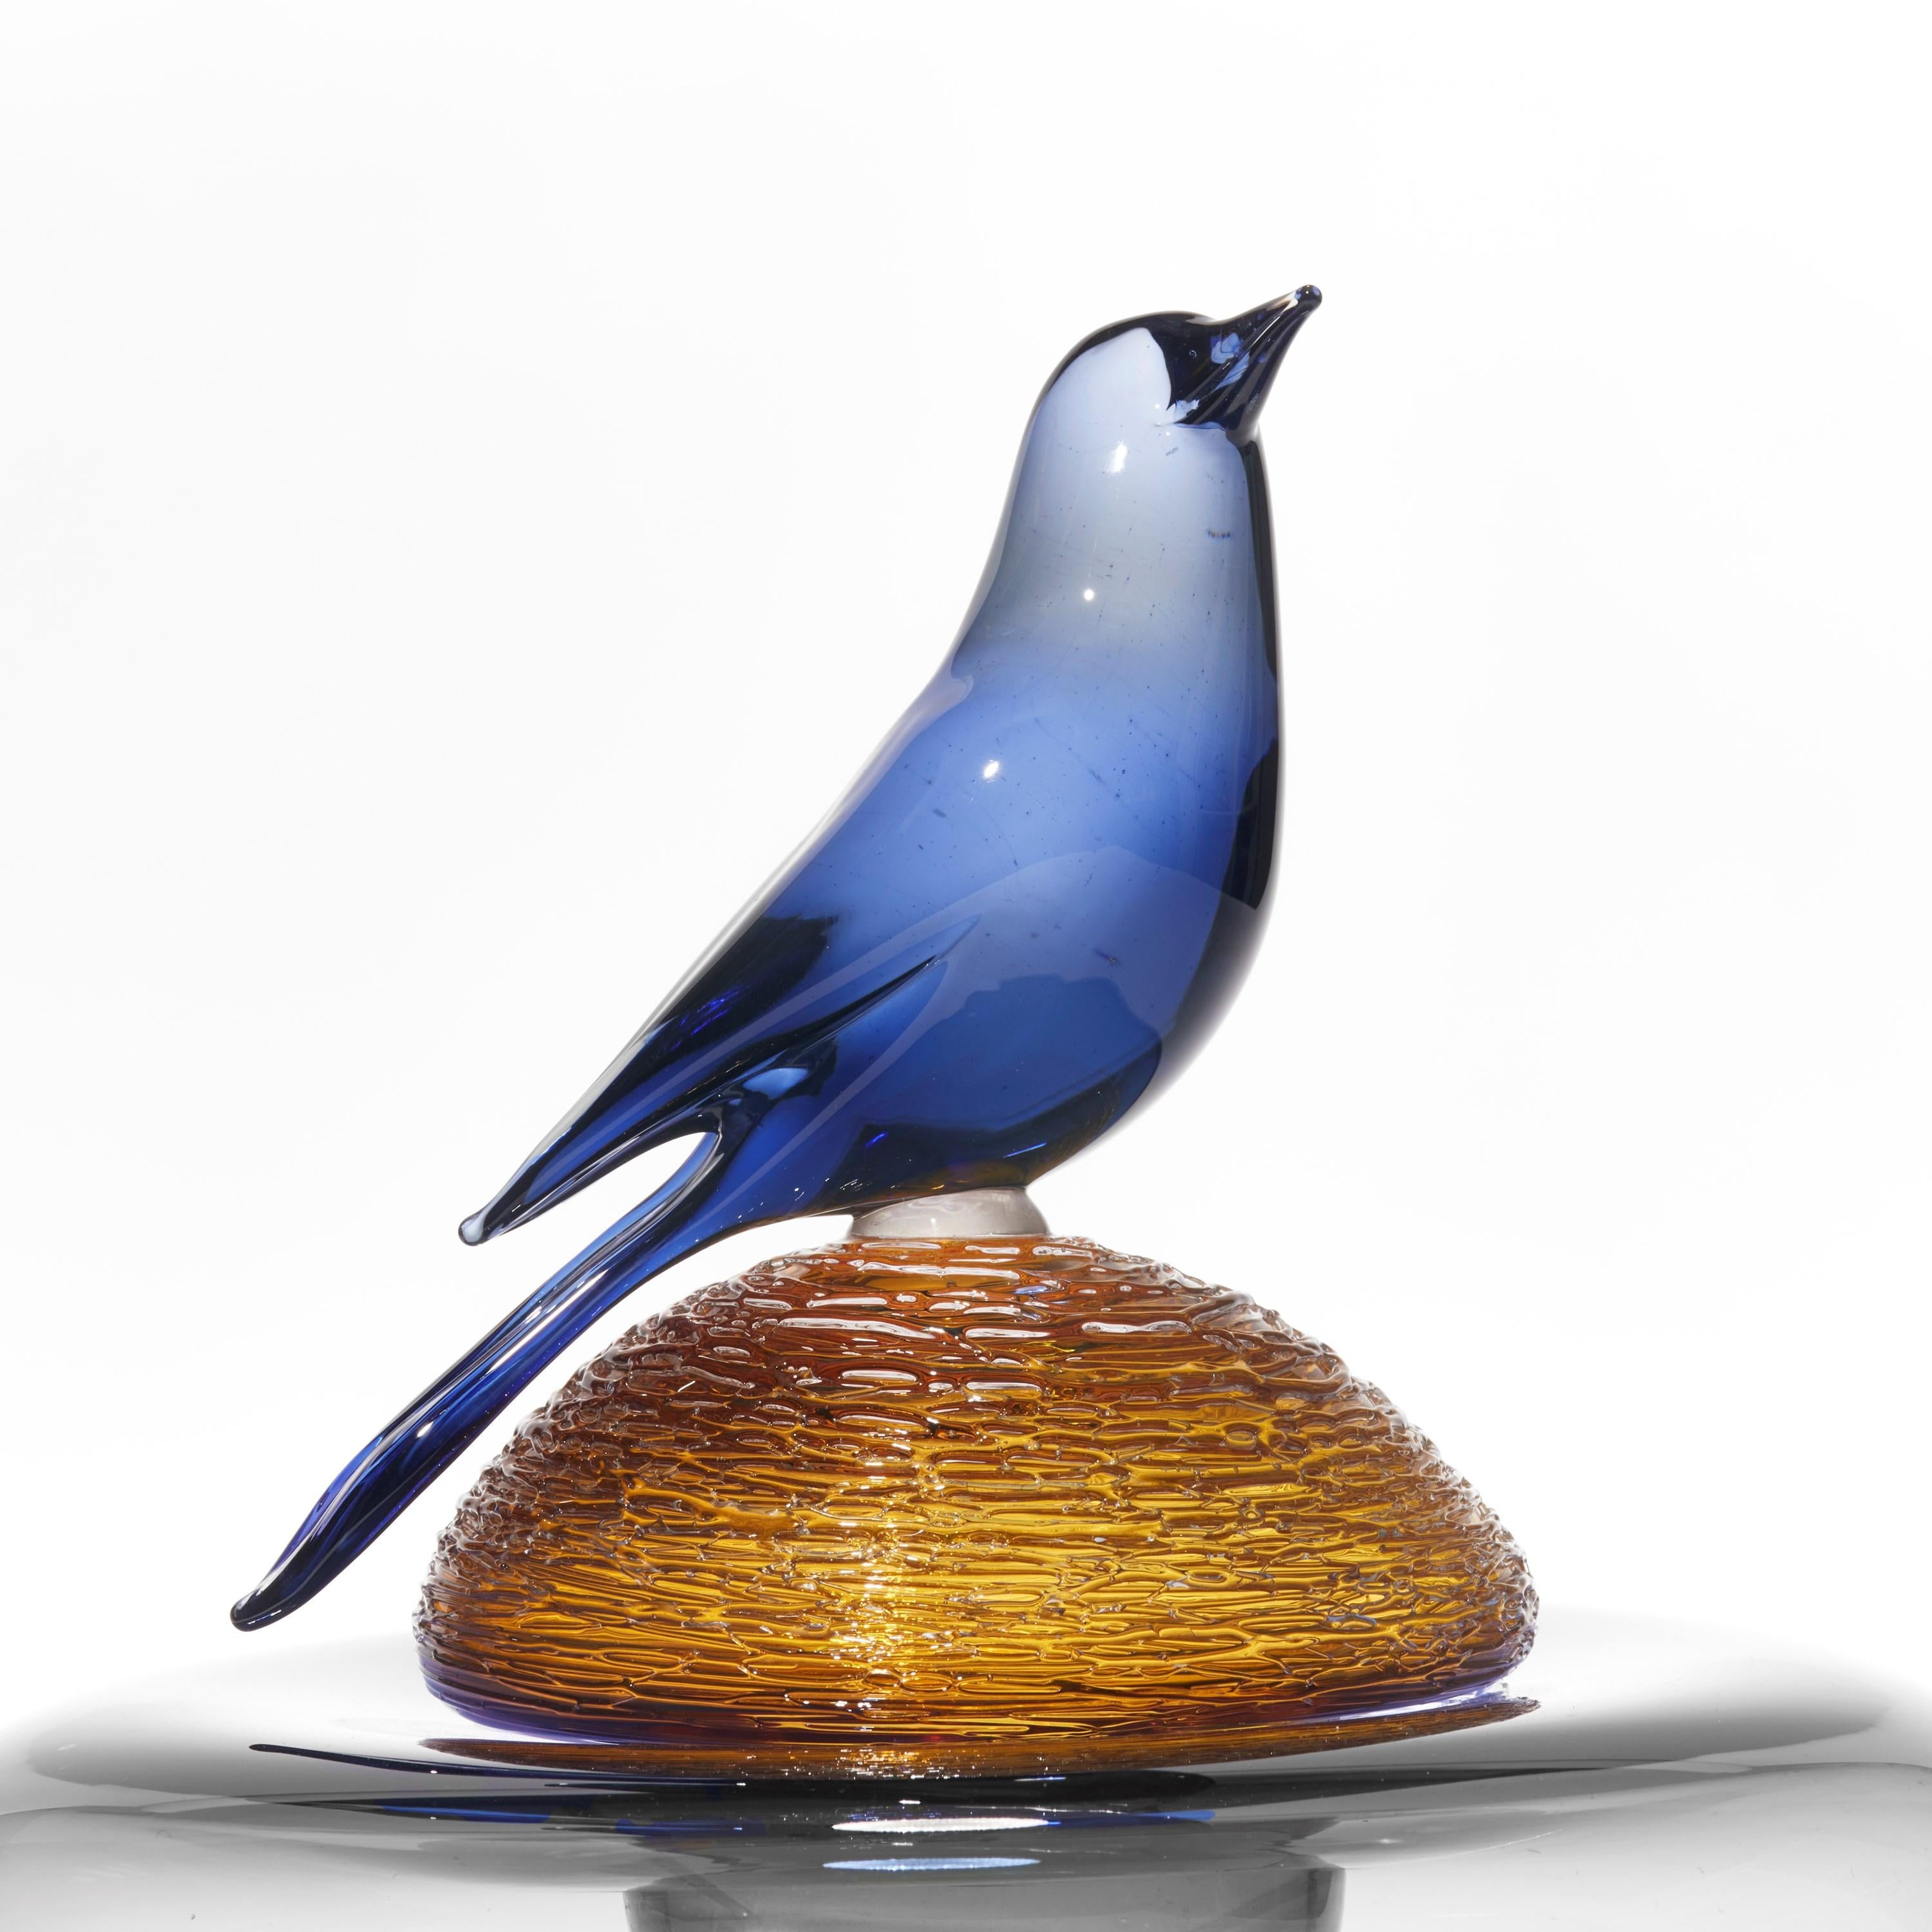 Organic Modern All About Birds XVII, a rich blue & amber glass bird sculpture by Julie Johnson